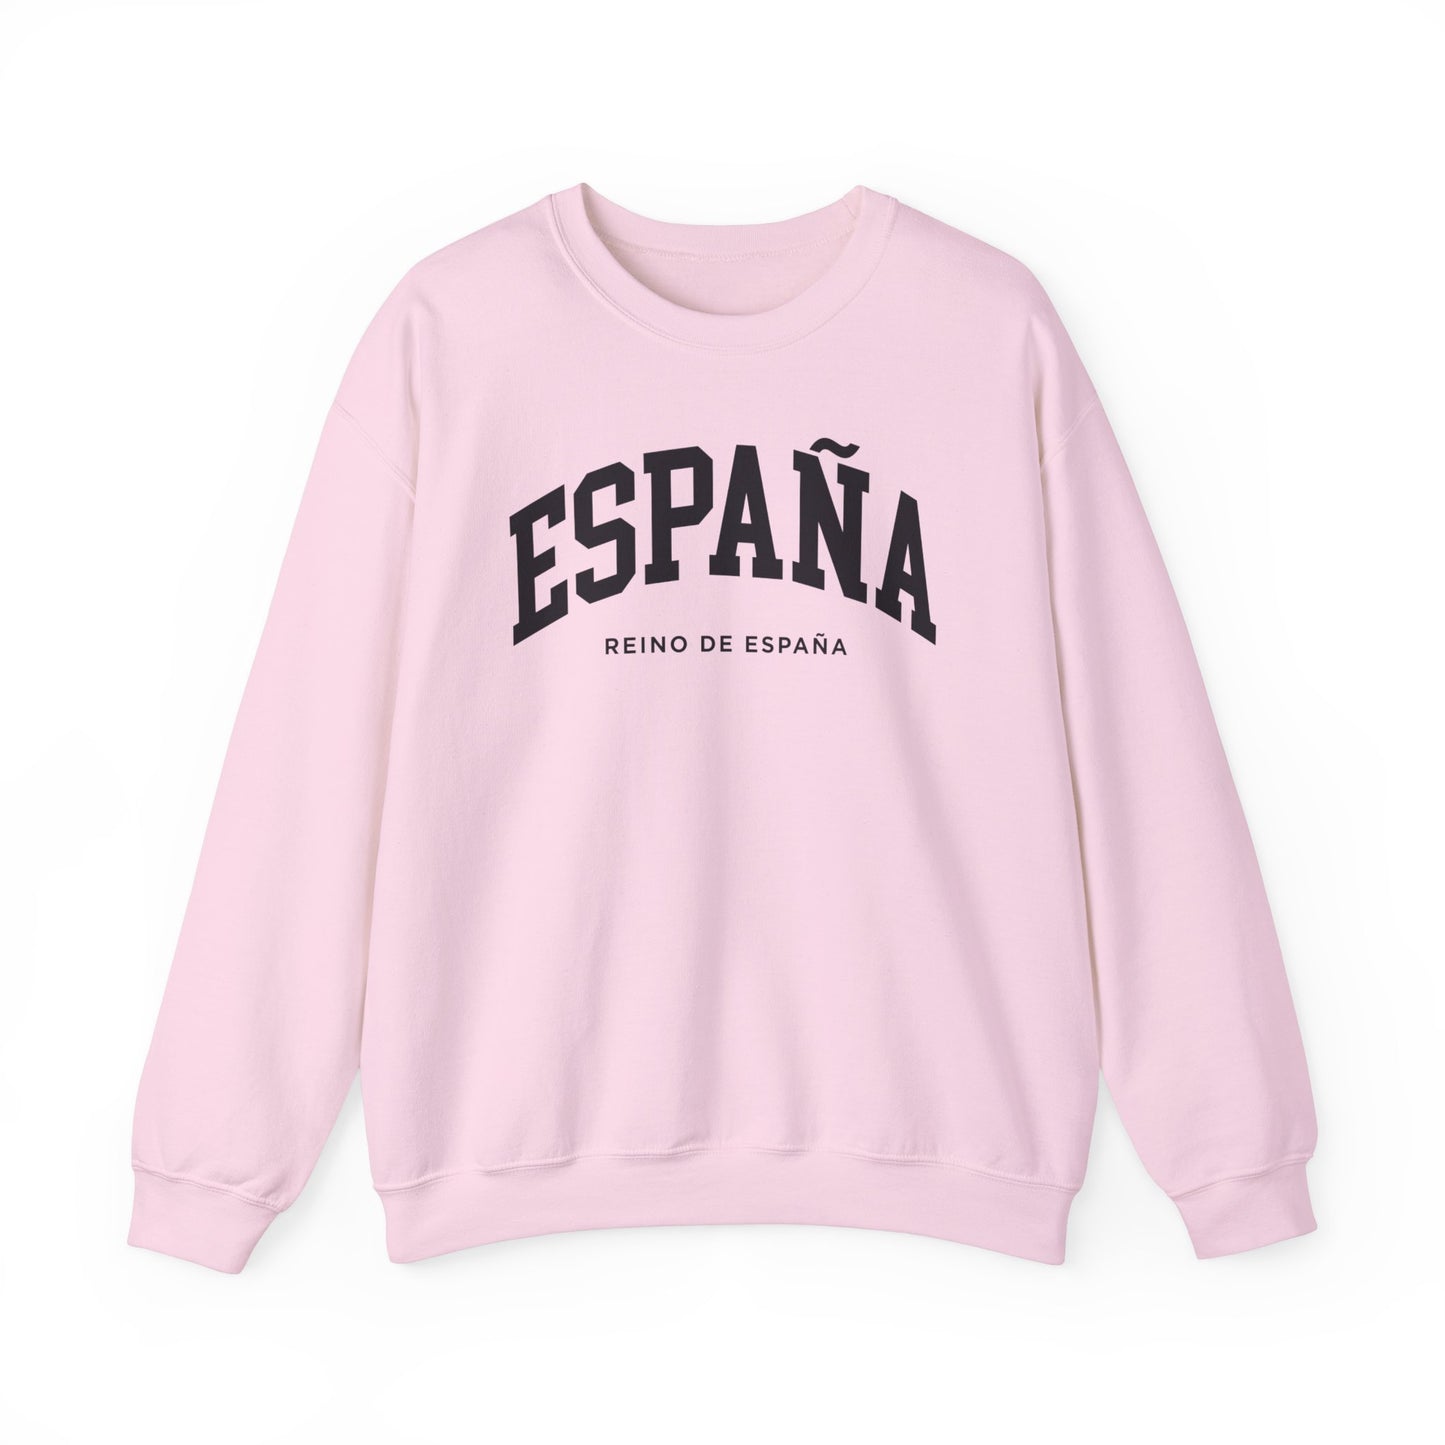 Spain Sweatshirt